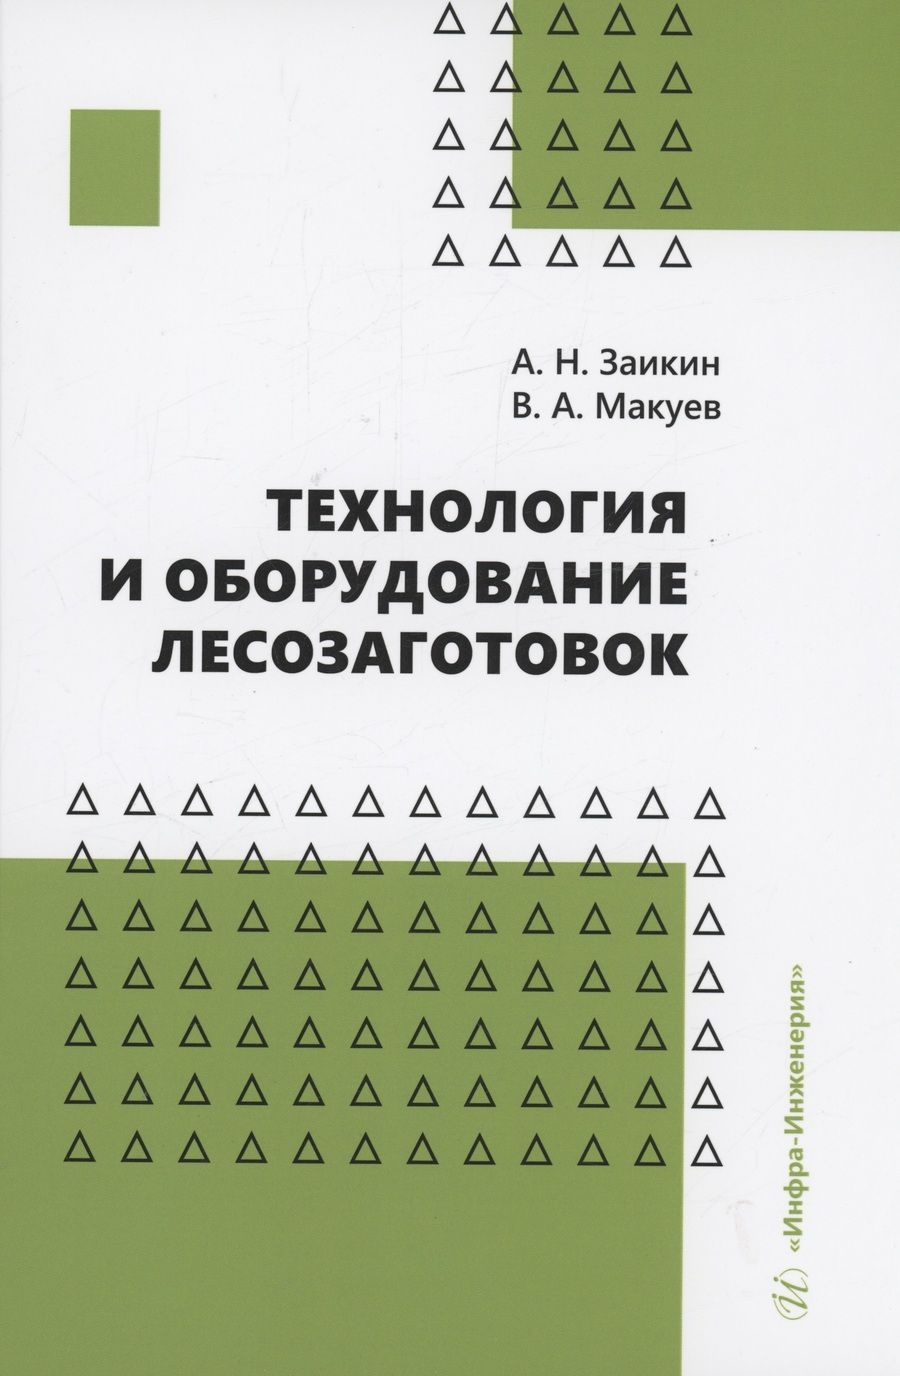 Обложка книги "Заикин, Макуев: Технология и оборудование лесозаготовок. Учебное пособие"